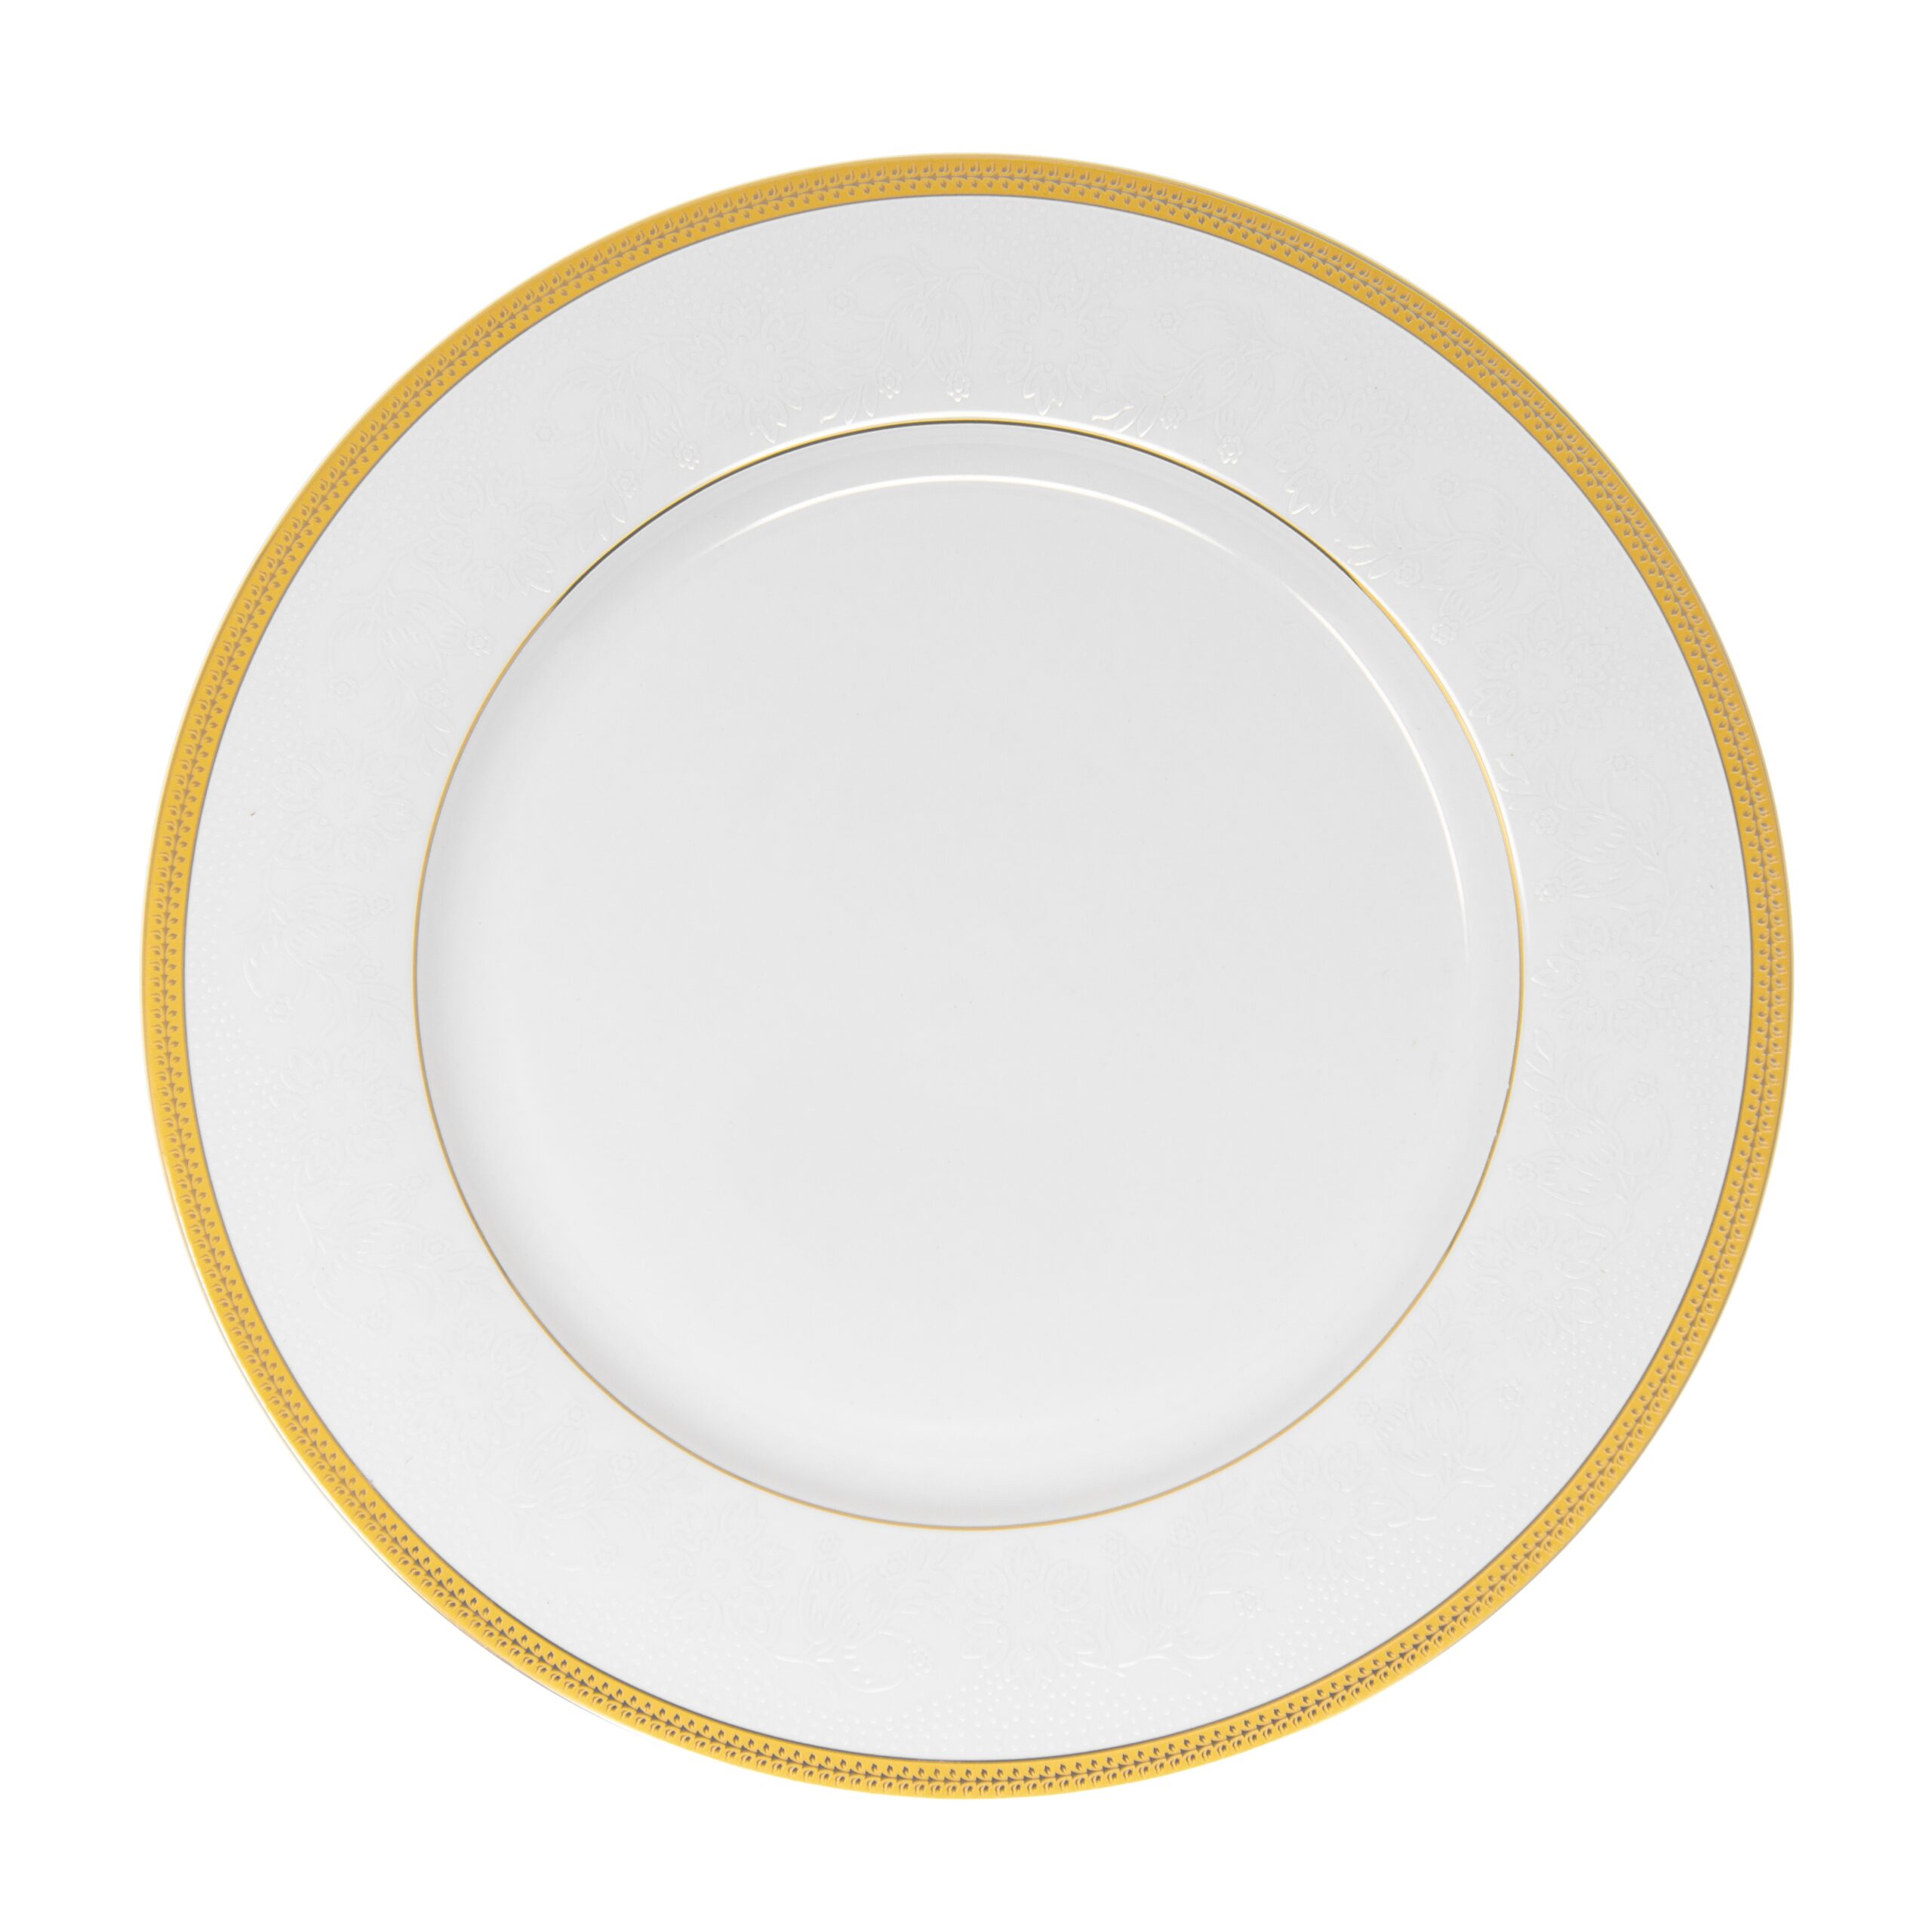 Bergner Grace Dinner Plate